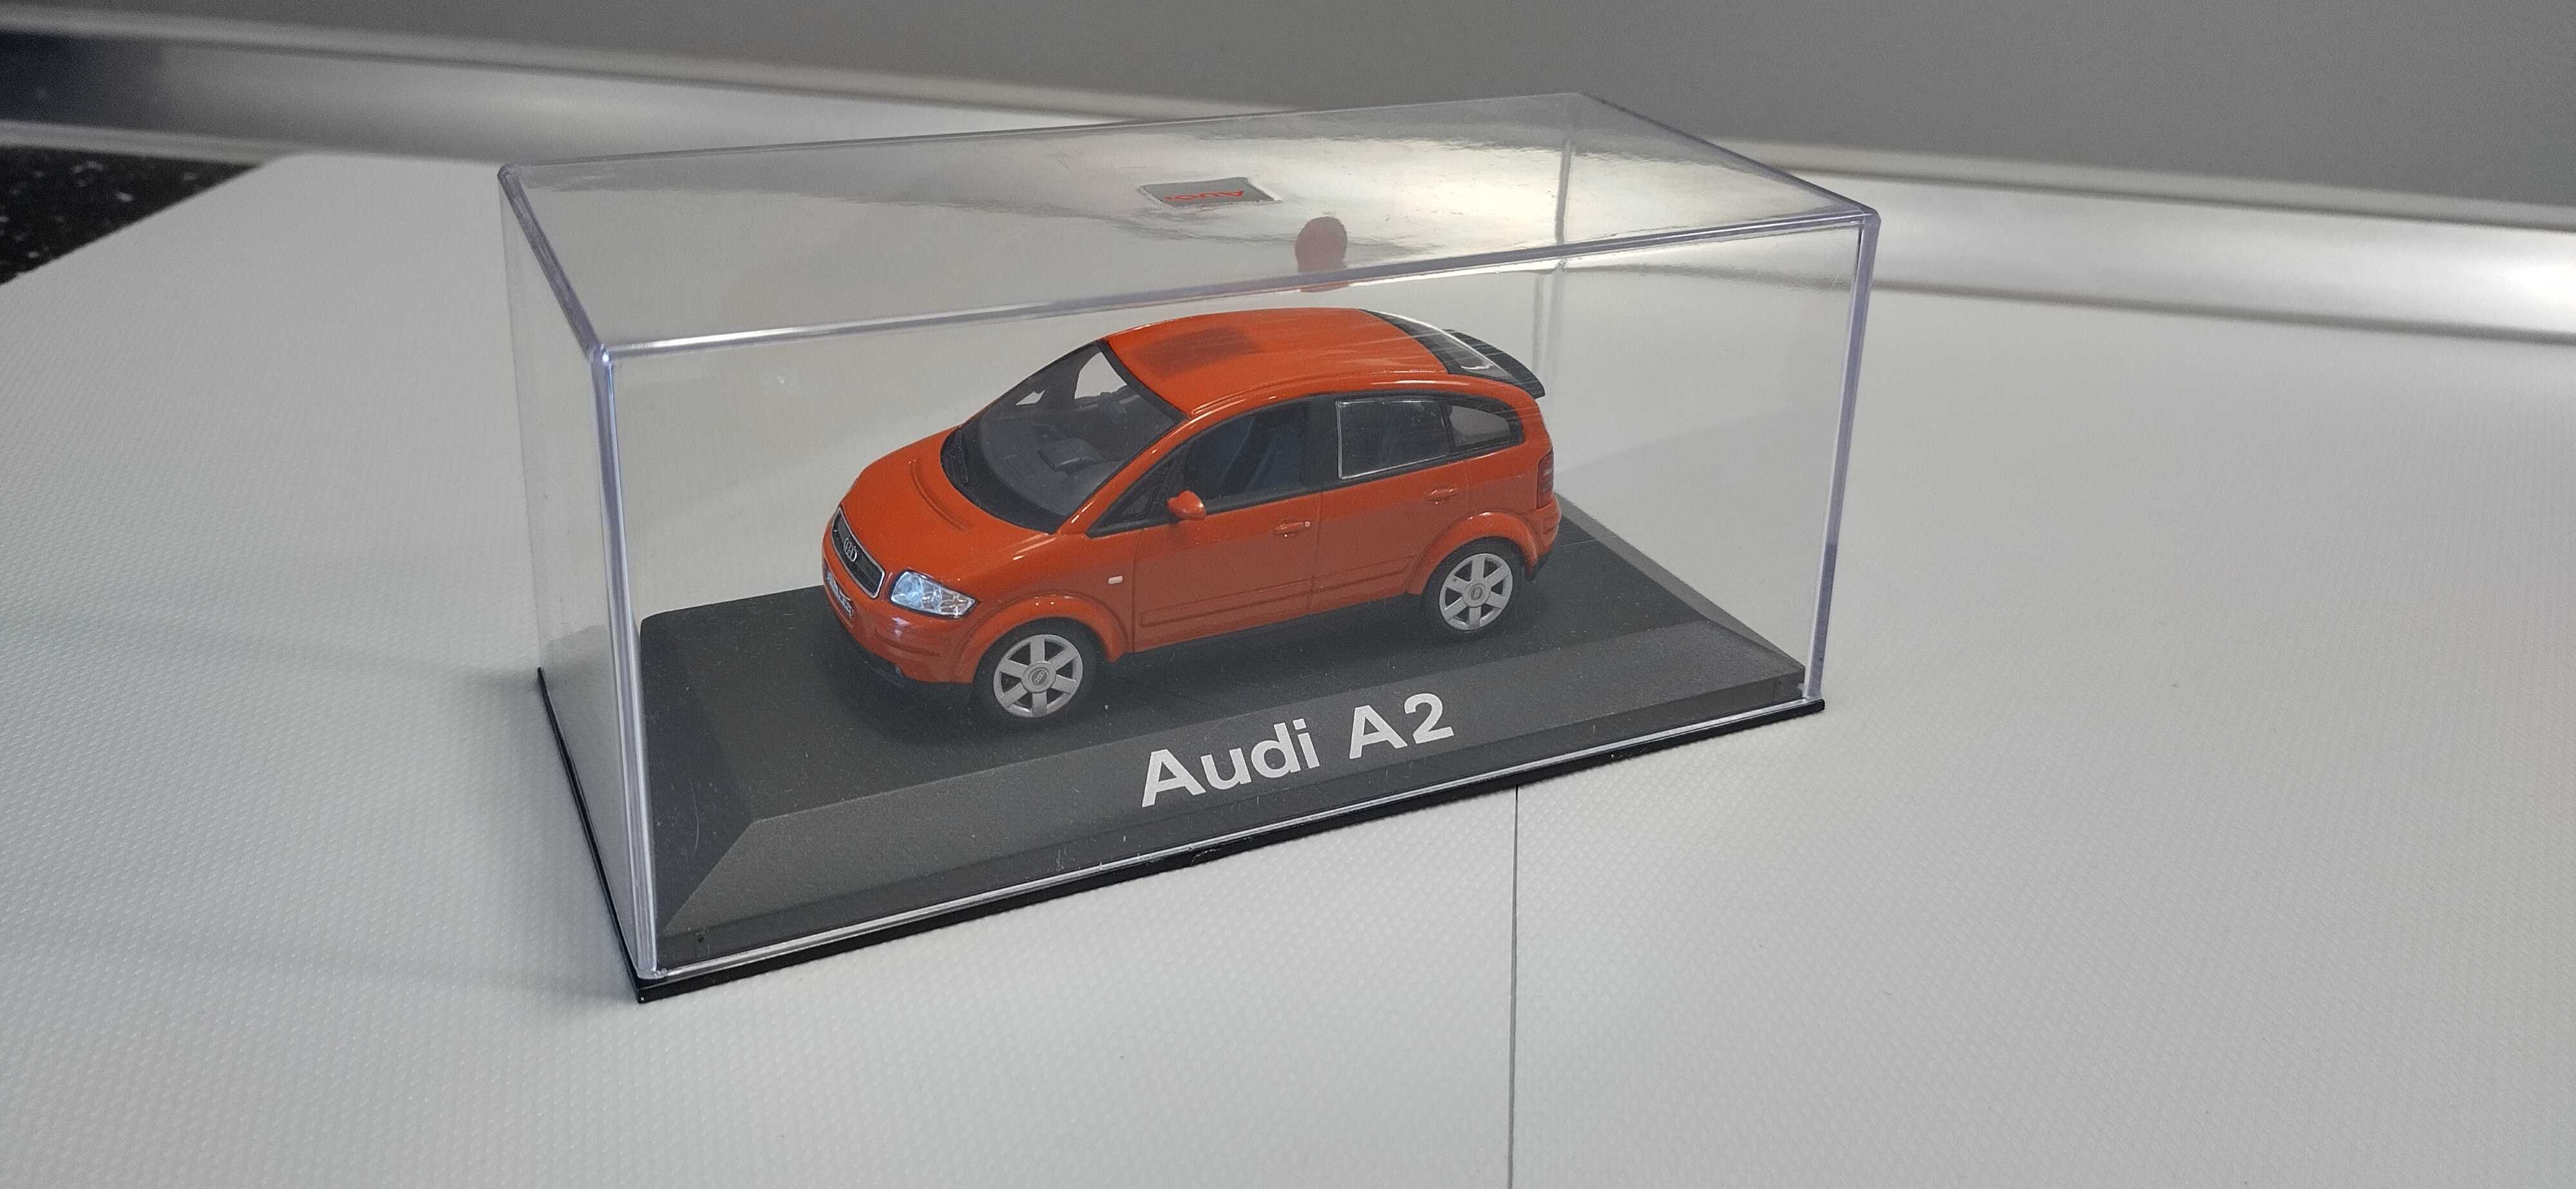 Audi A2 Minichamps 1:43